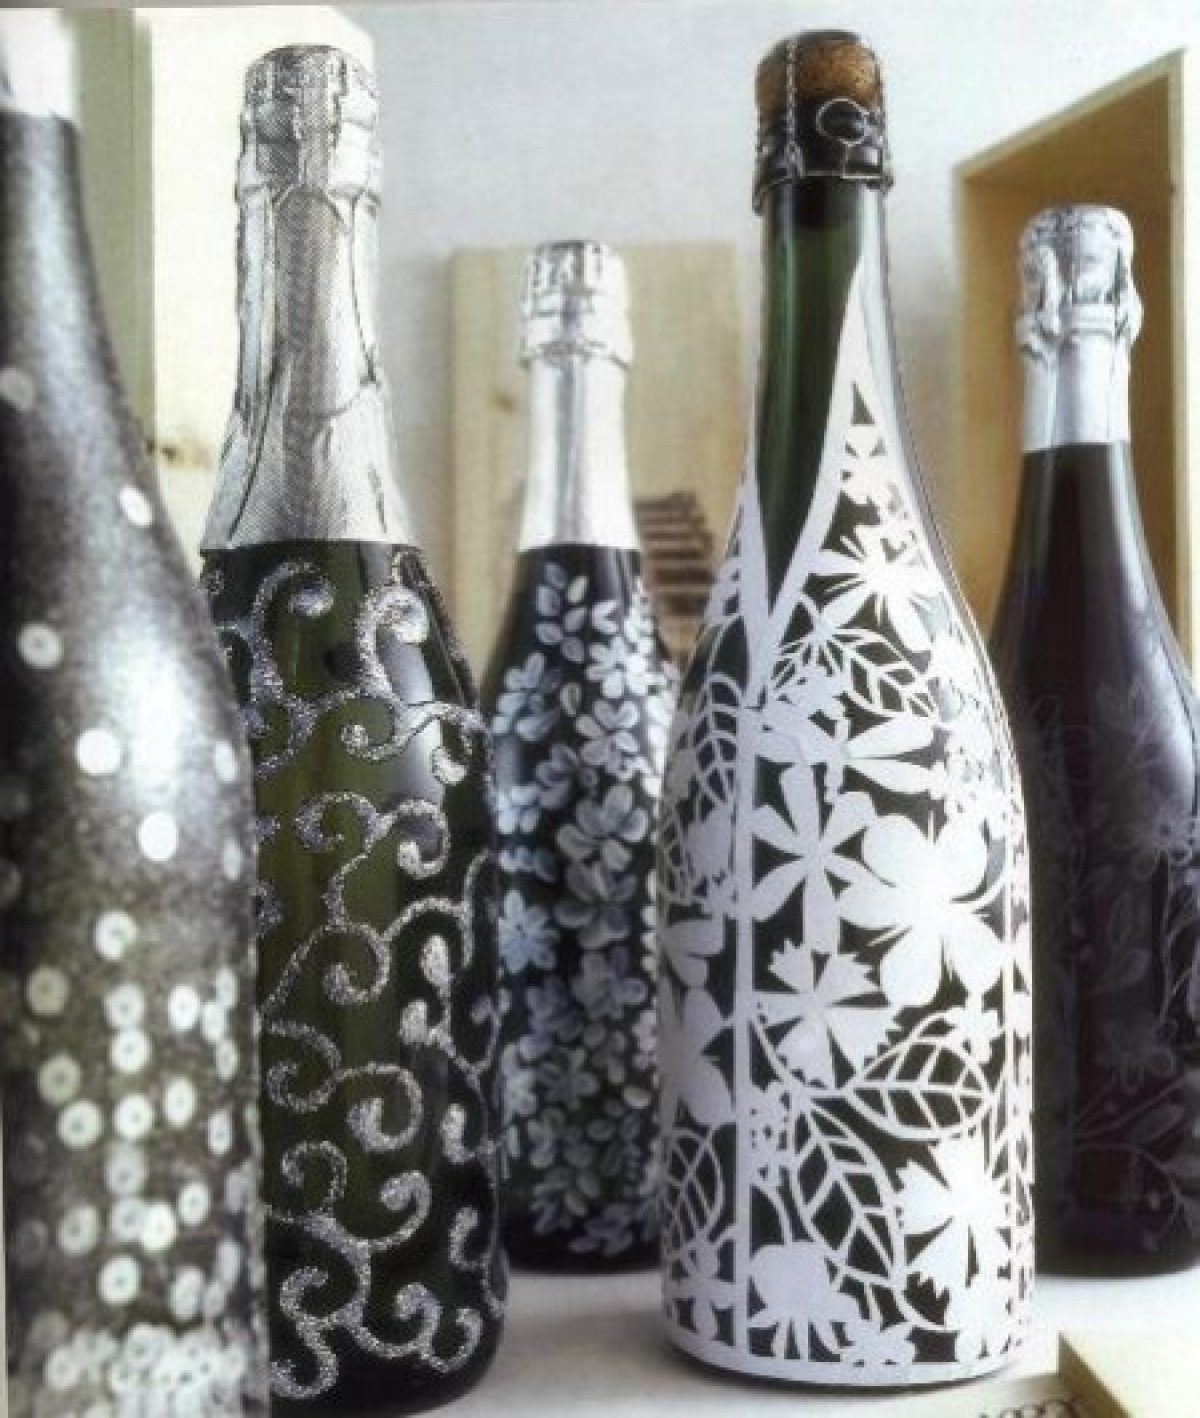 Decorazioni Bottiglie Natalizie.Come Addobbare La Tavola Di Natale Con Bottiglie Decorate A Festa Pourfemme